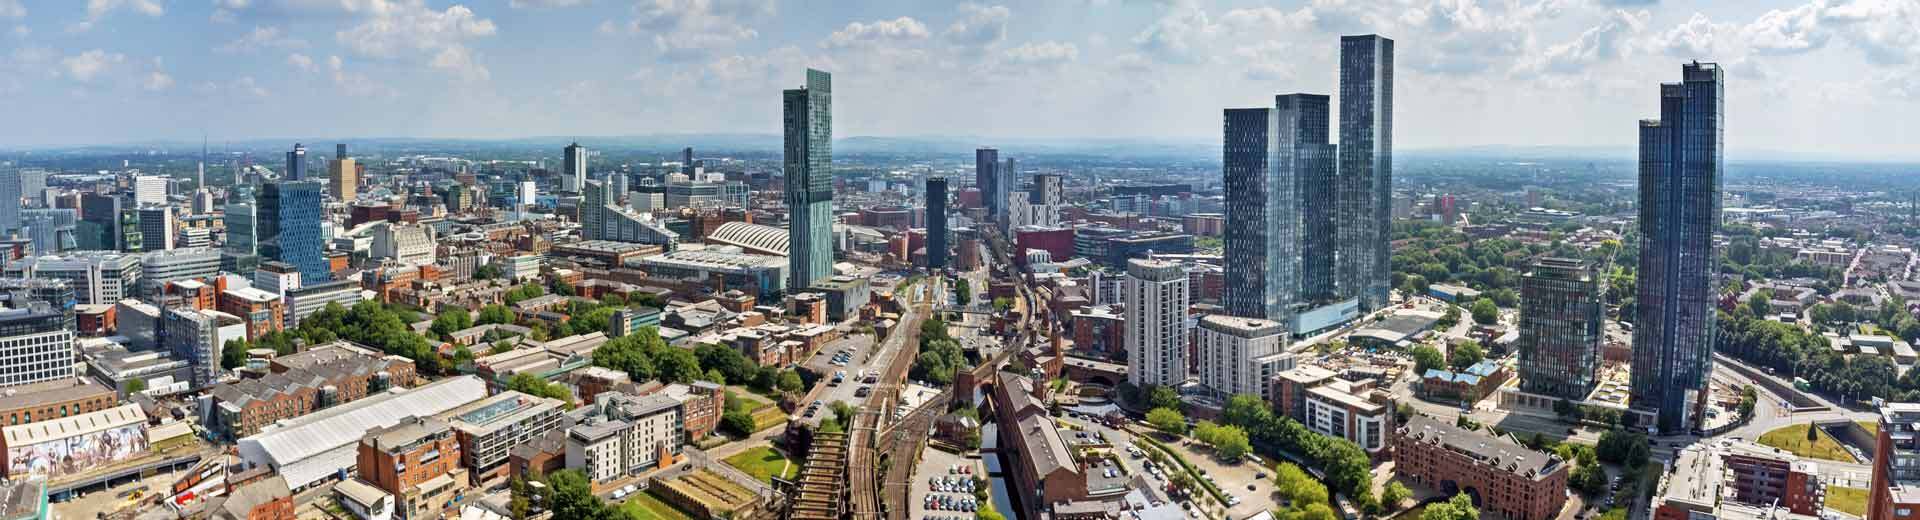 Luftaufnahme von Manchester mit Wolkenkratzern über rot-bricke viktorianische Gebäude.